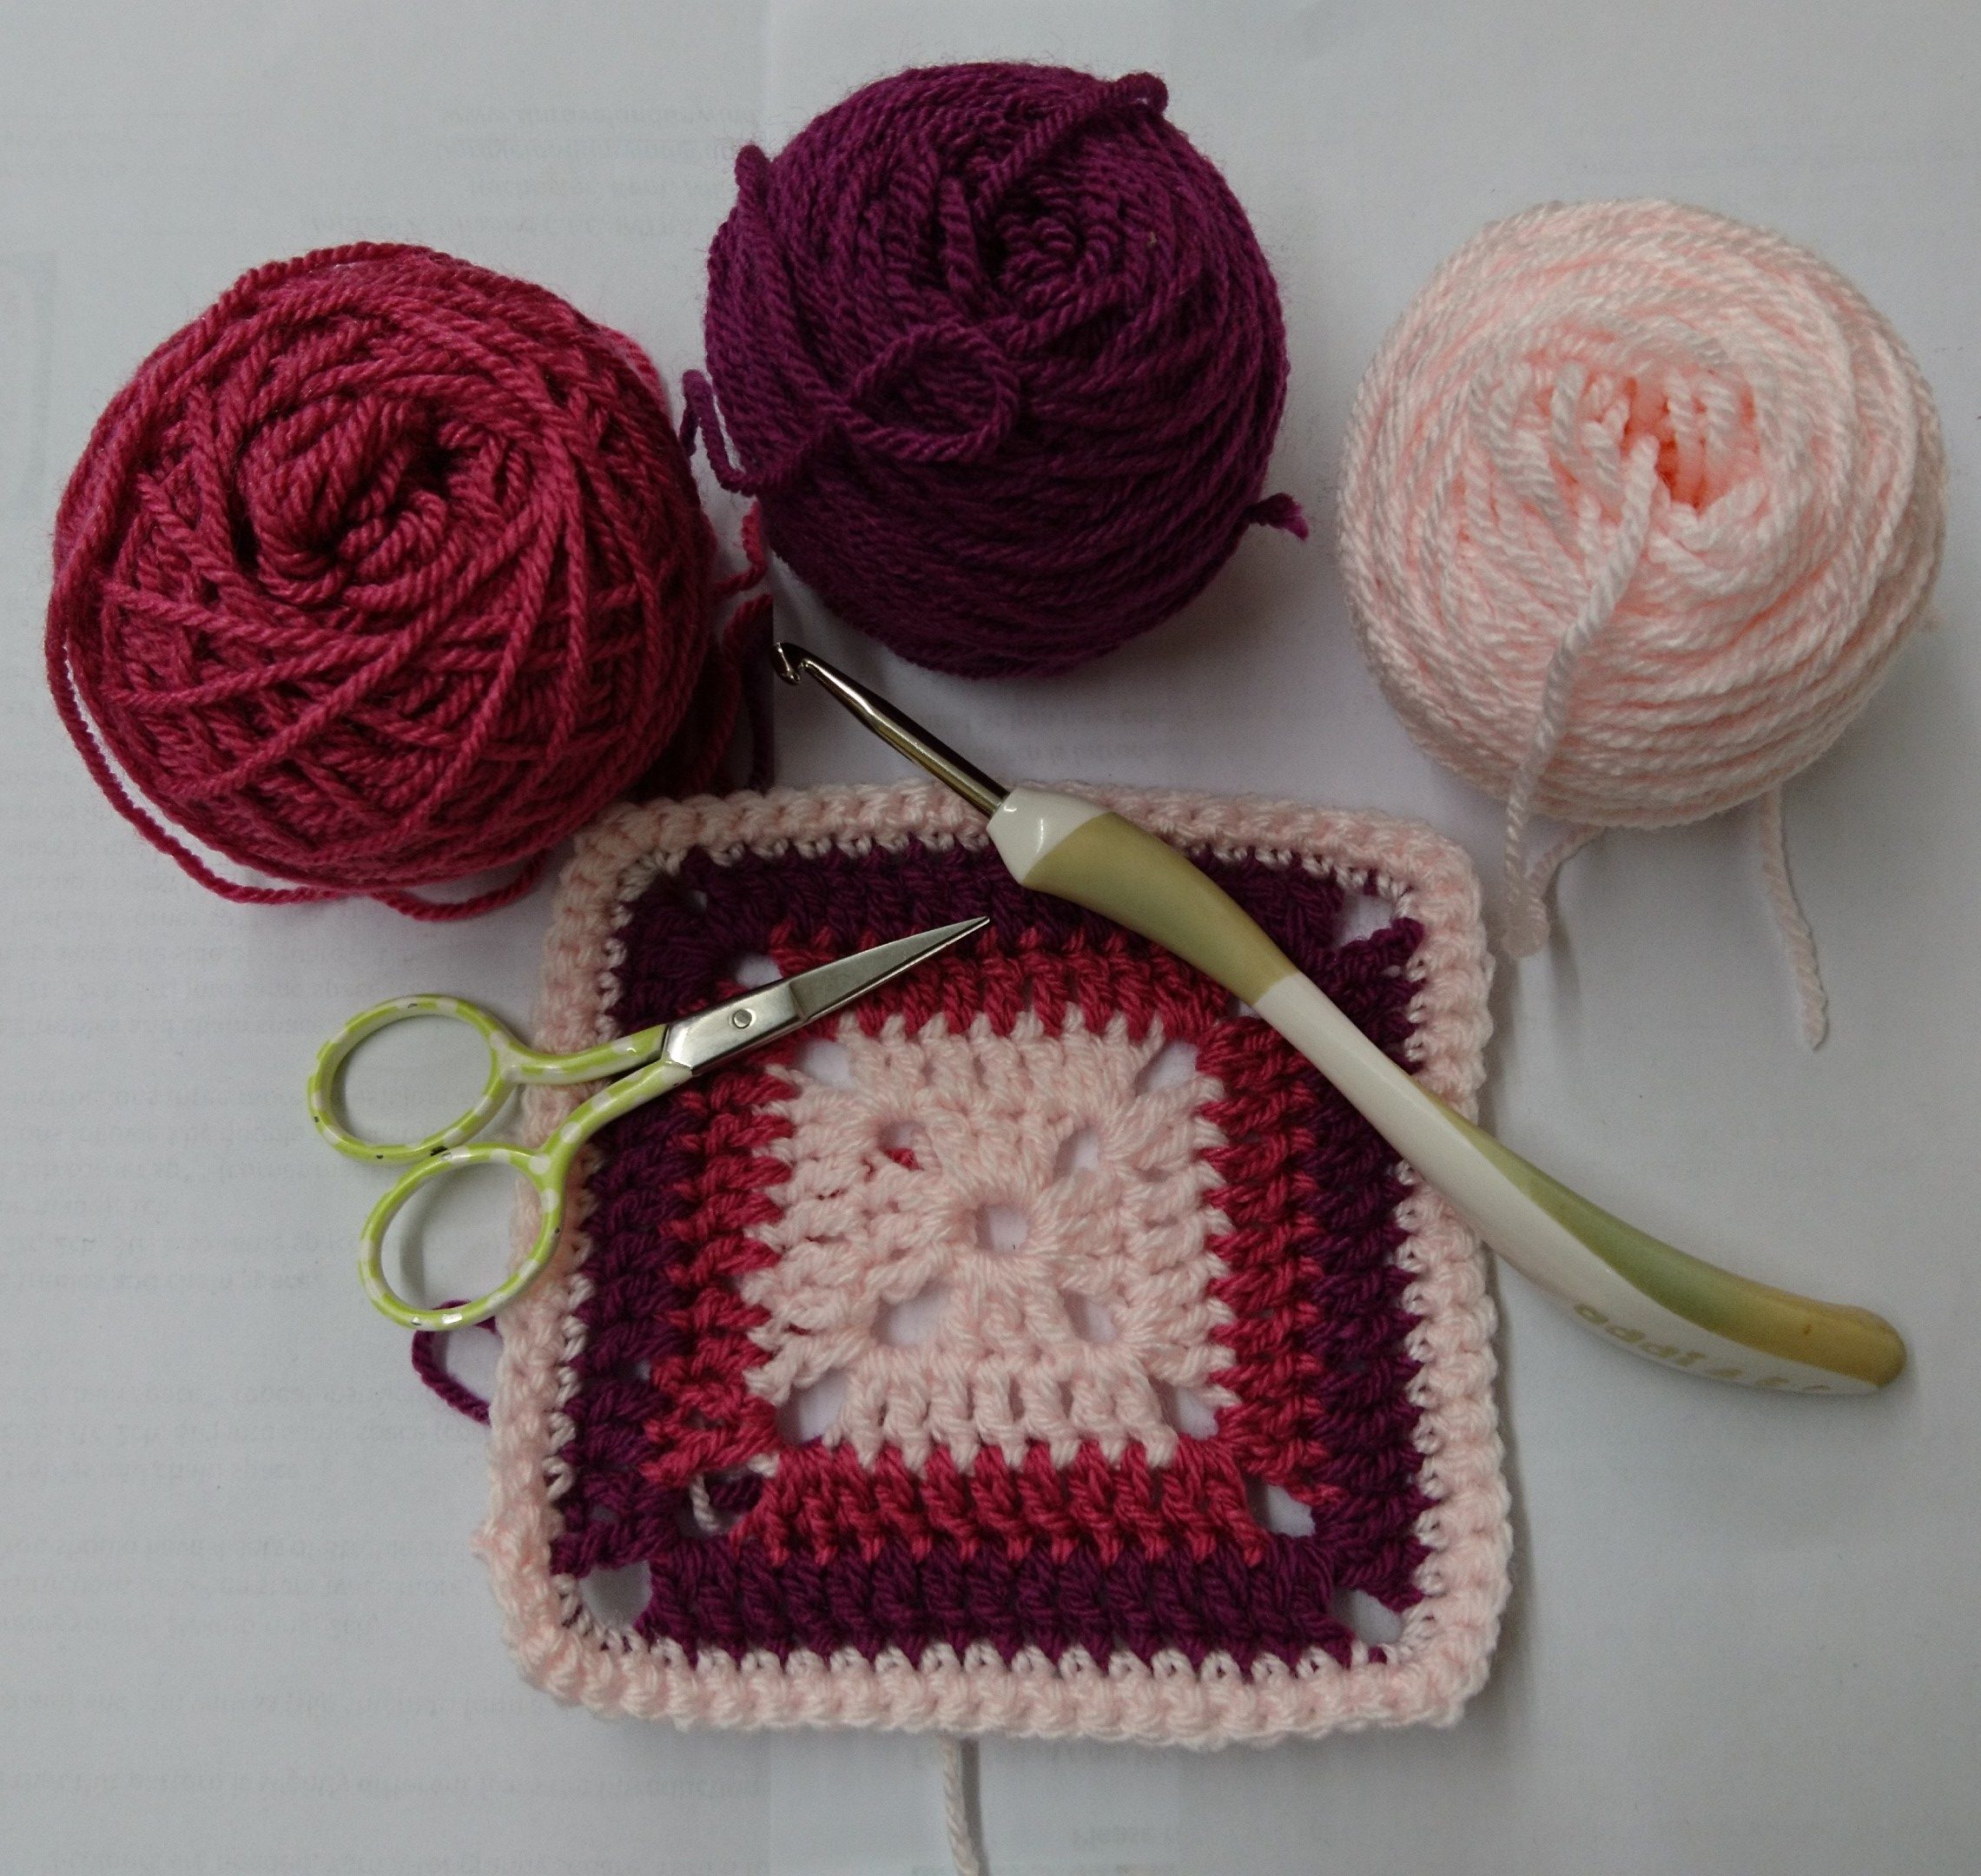 Learn to crochet